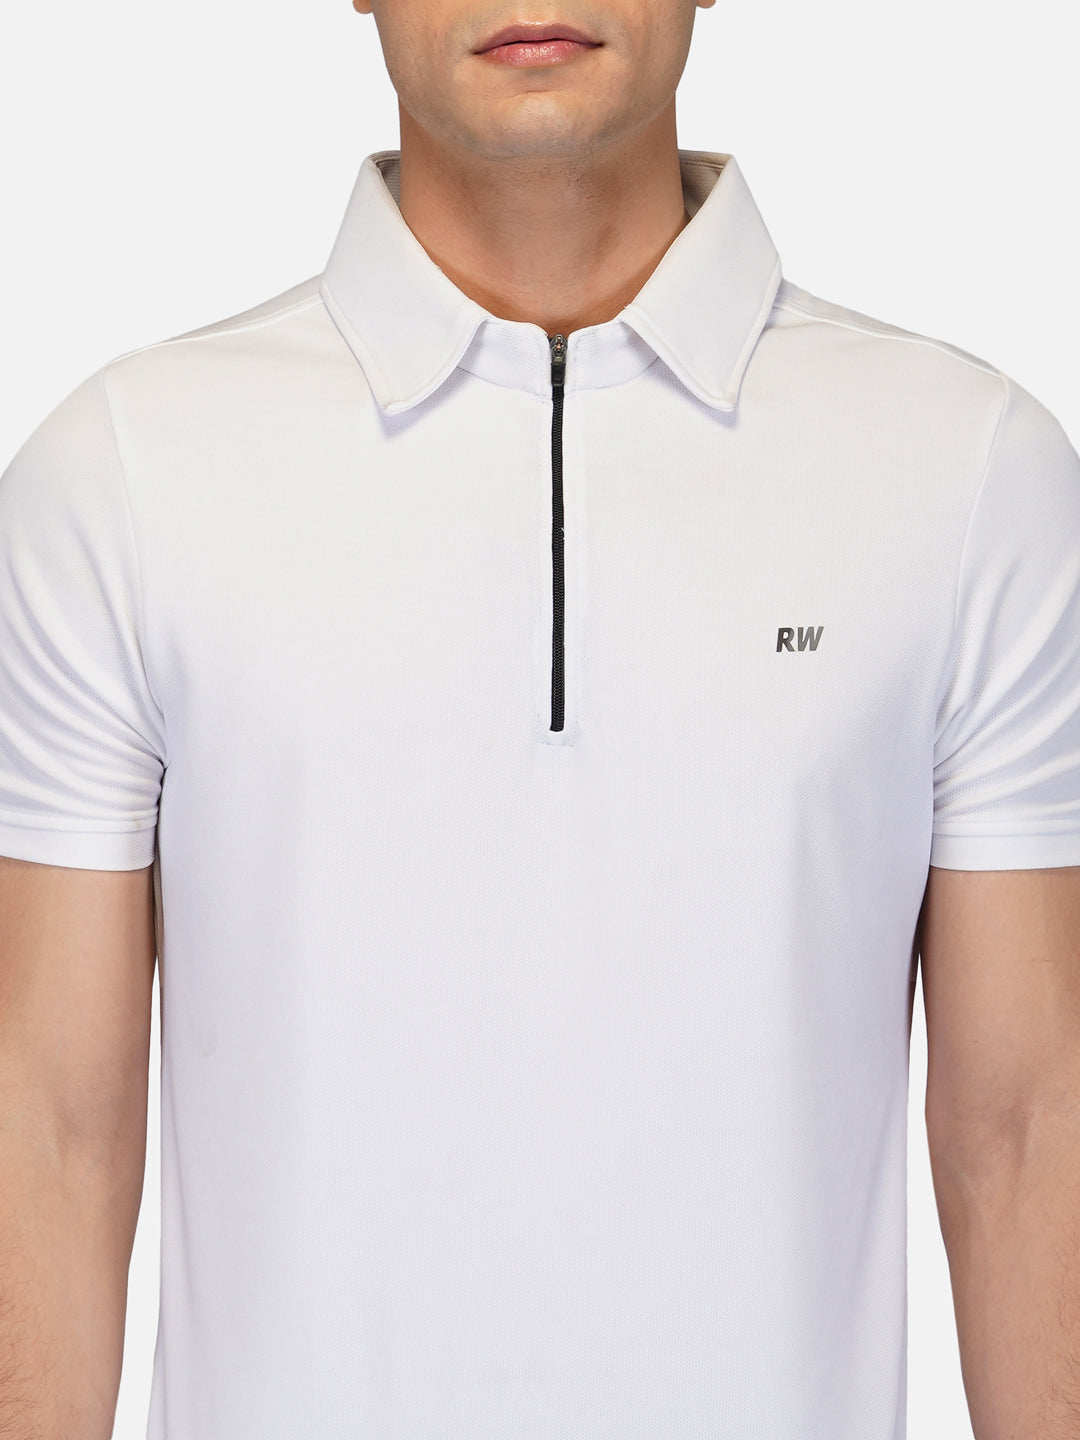 DriDOT Zipper Polo T Shirt RWM2024 White